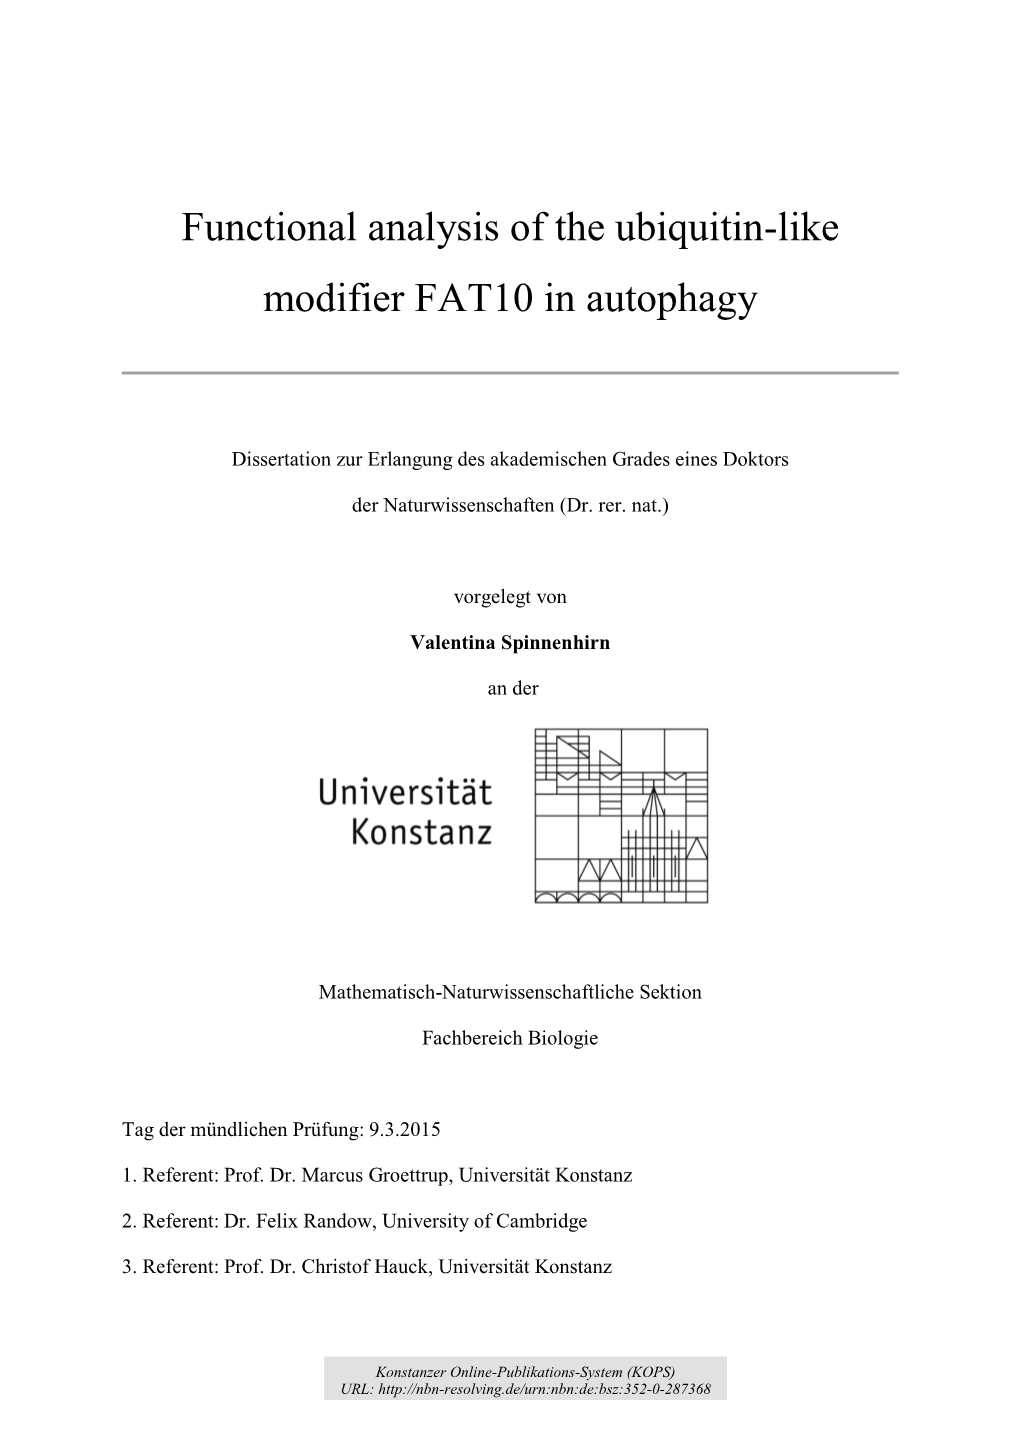 Functional Analysis of the Ubiquitin-Like Modifier FAT10 in Autophagy Selbständig Verfasst Und Keine Anderen Hilfsmittel Als Die Angegebenen Benutzt Habe